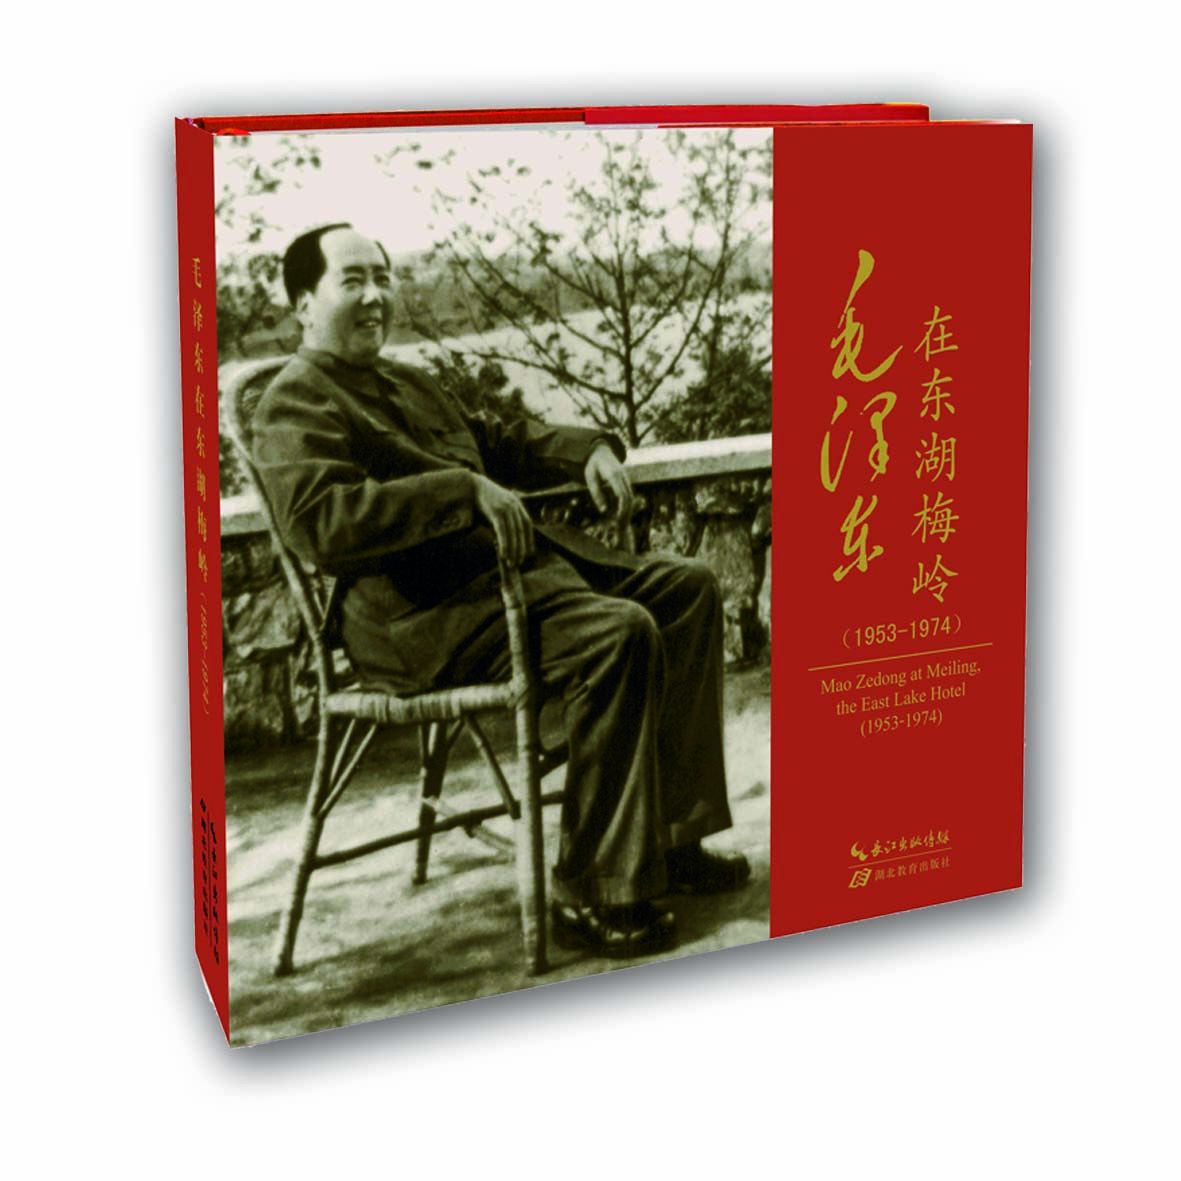 毛澤東在東湖梅嶺(1953-1974)